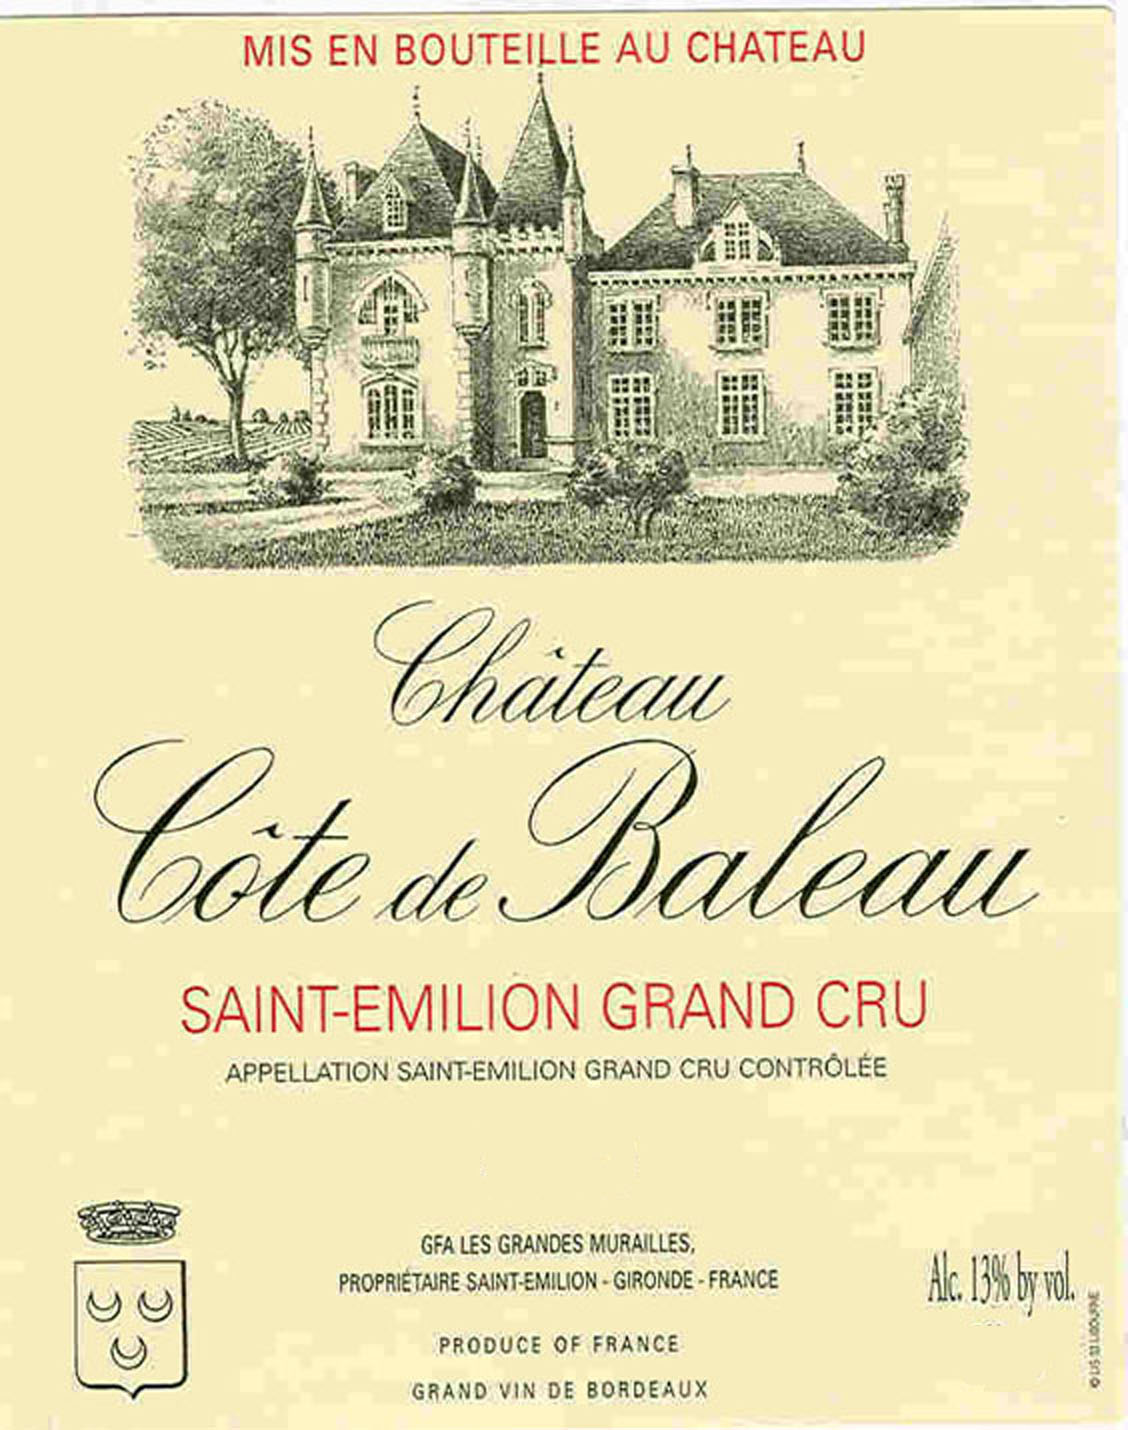 Chateau Cote De Baleau label